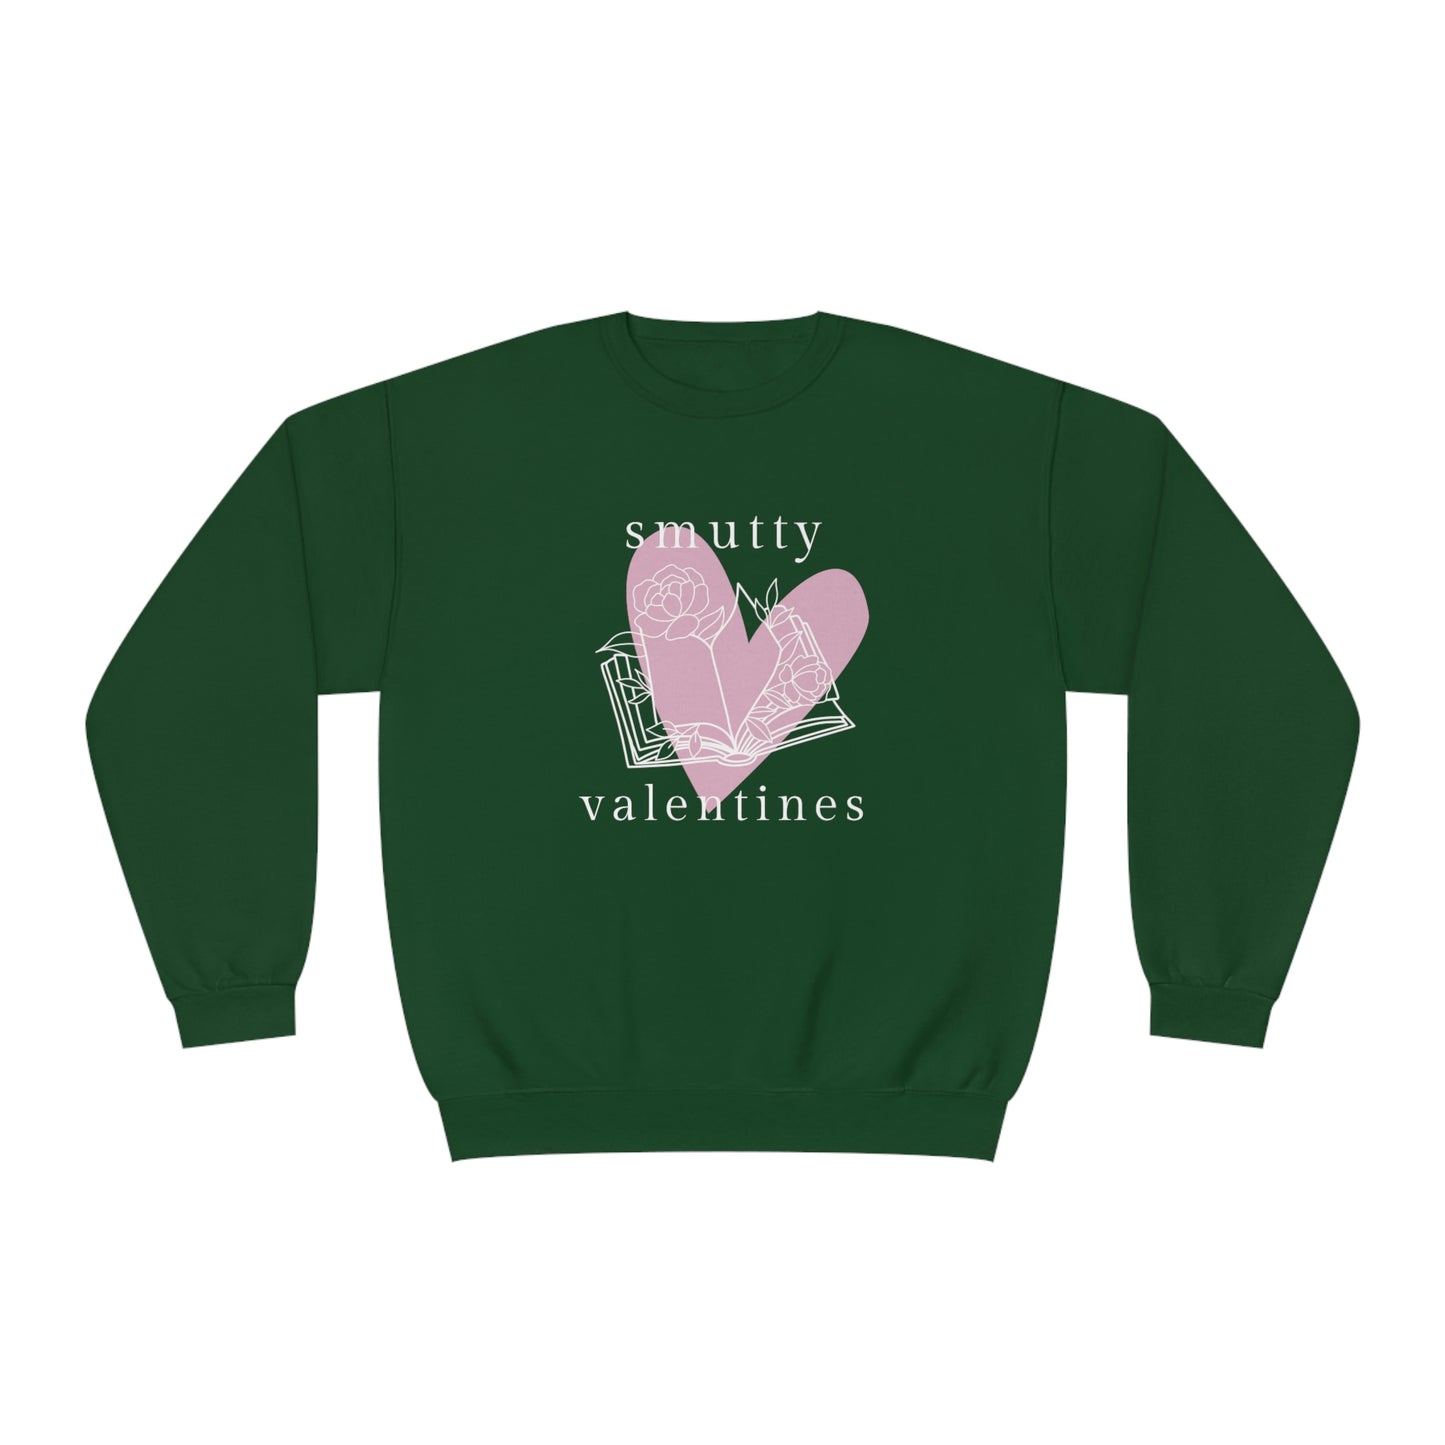 Smutty Valentines Crewneck Sweatshirt